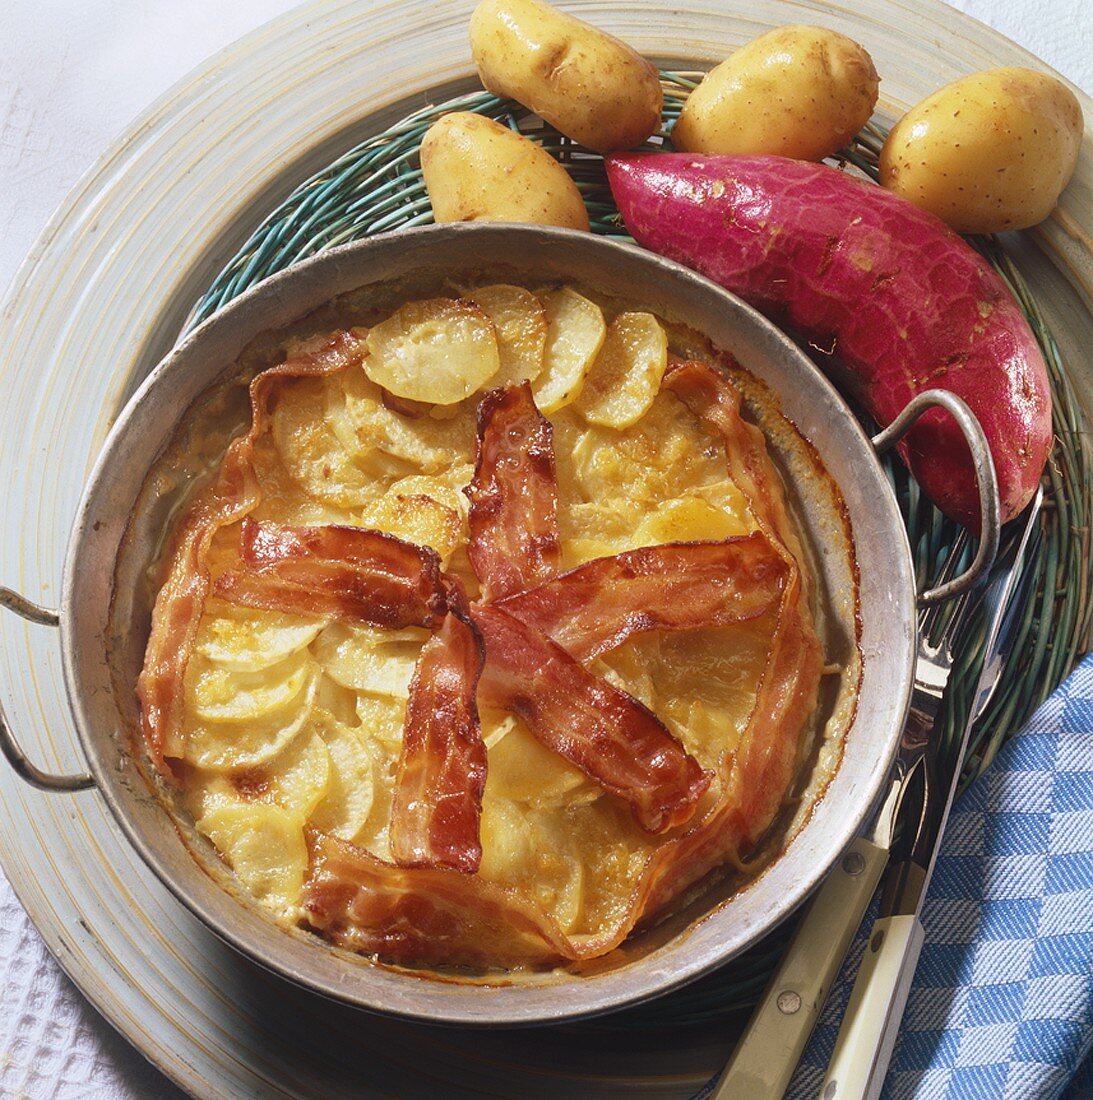 Potato gratin with bacon